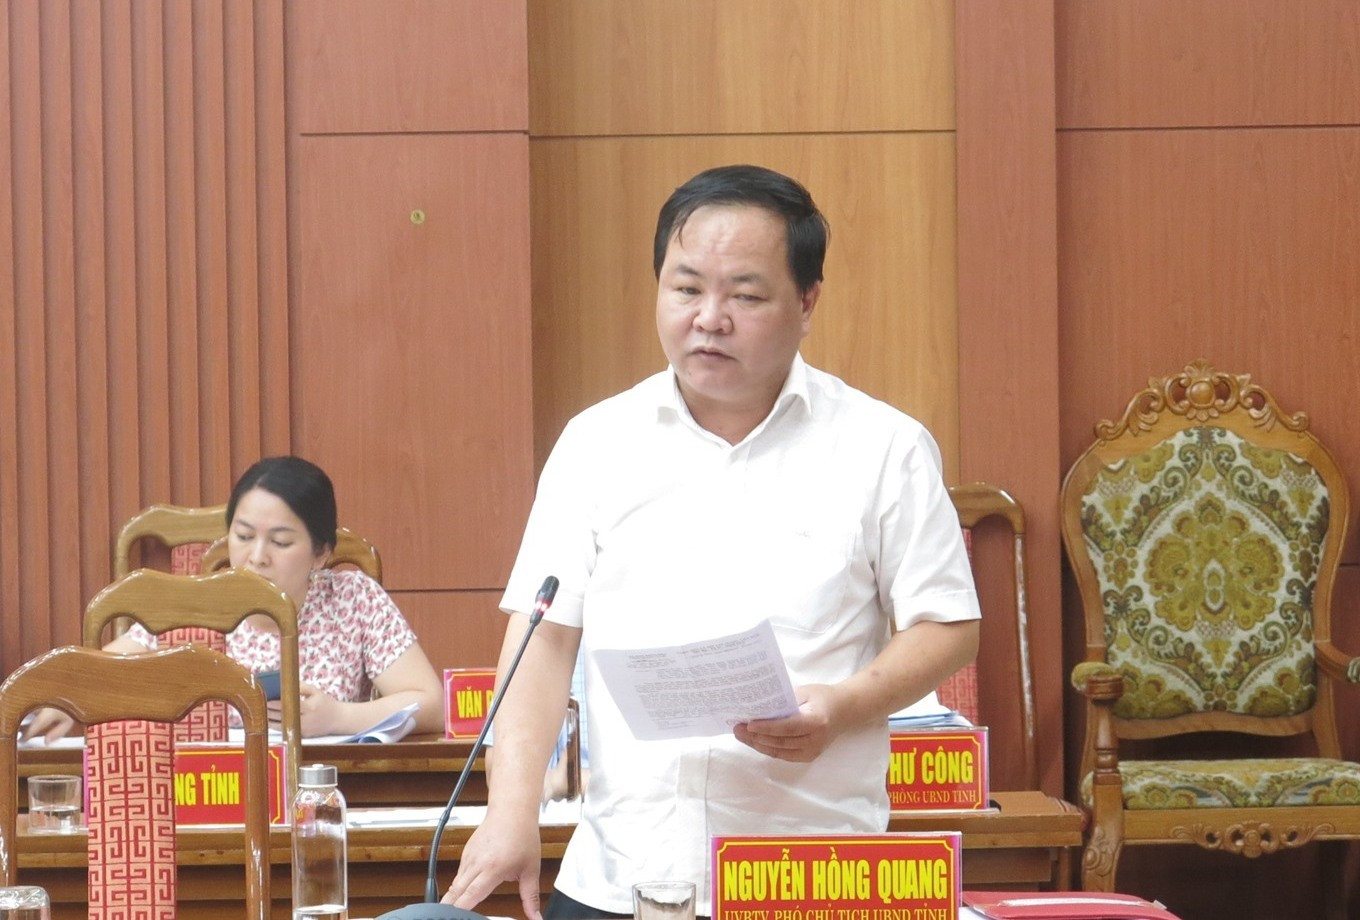 Phó chủ tịch UBND tỉnh Nguyễn Hồng Quang nêu ý kiến về việc đẩy nhanh tiến độ giải ngân vốn đầu tư công, thu chi ngân sách